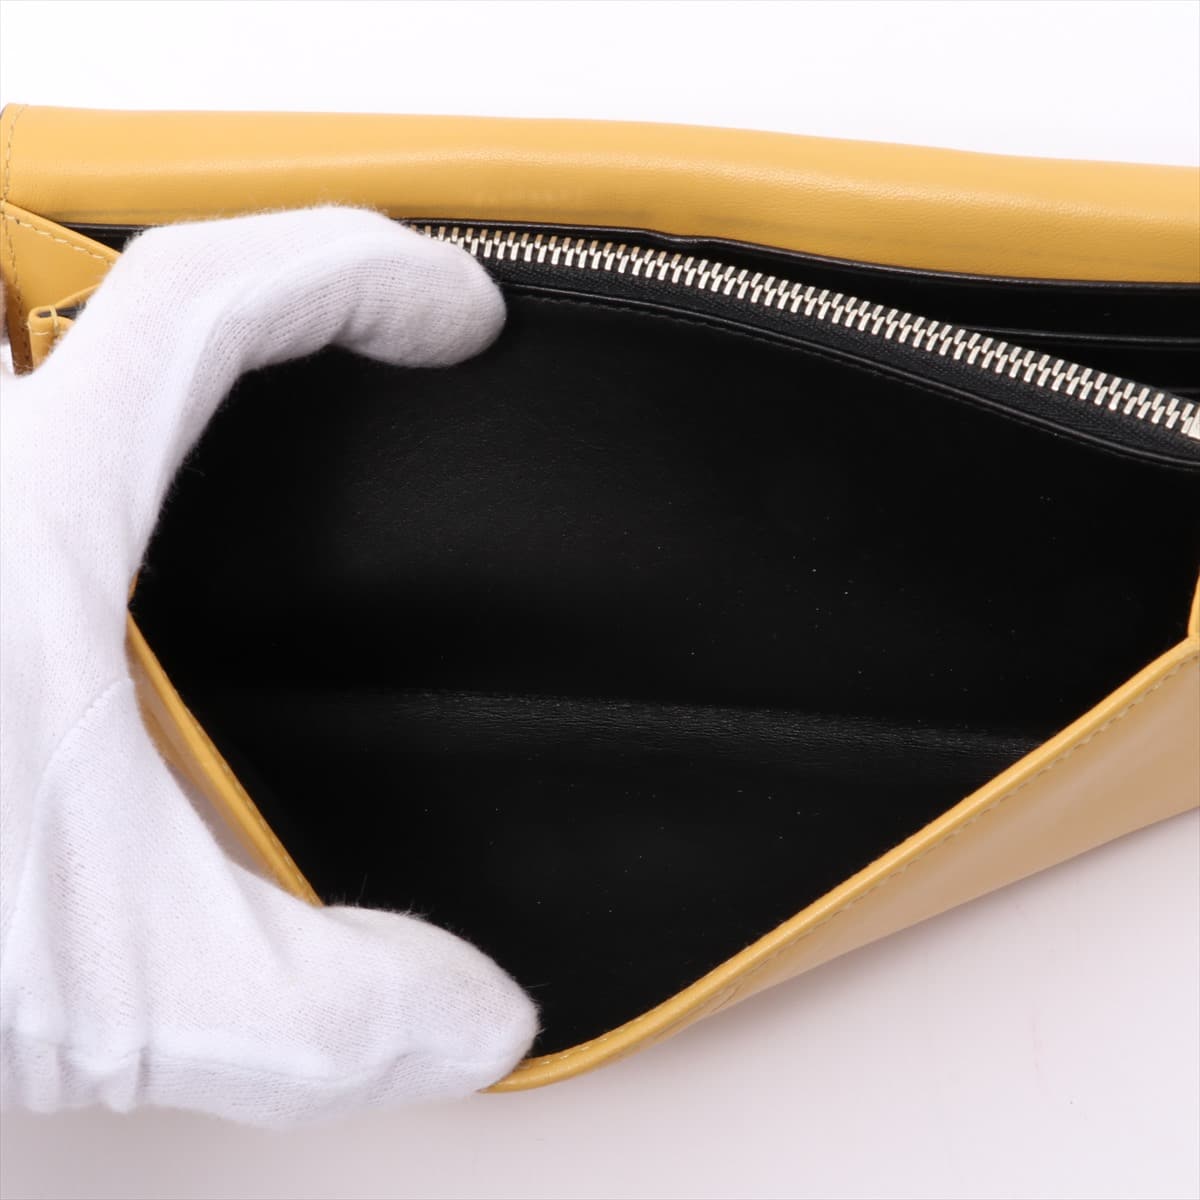 Loewe Leather Wallet Yellow